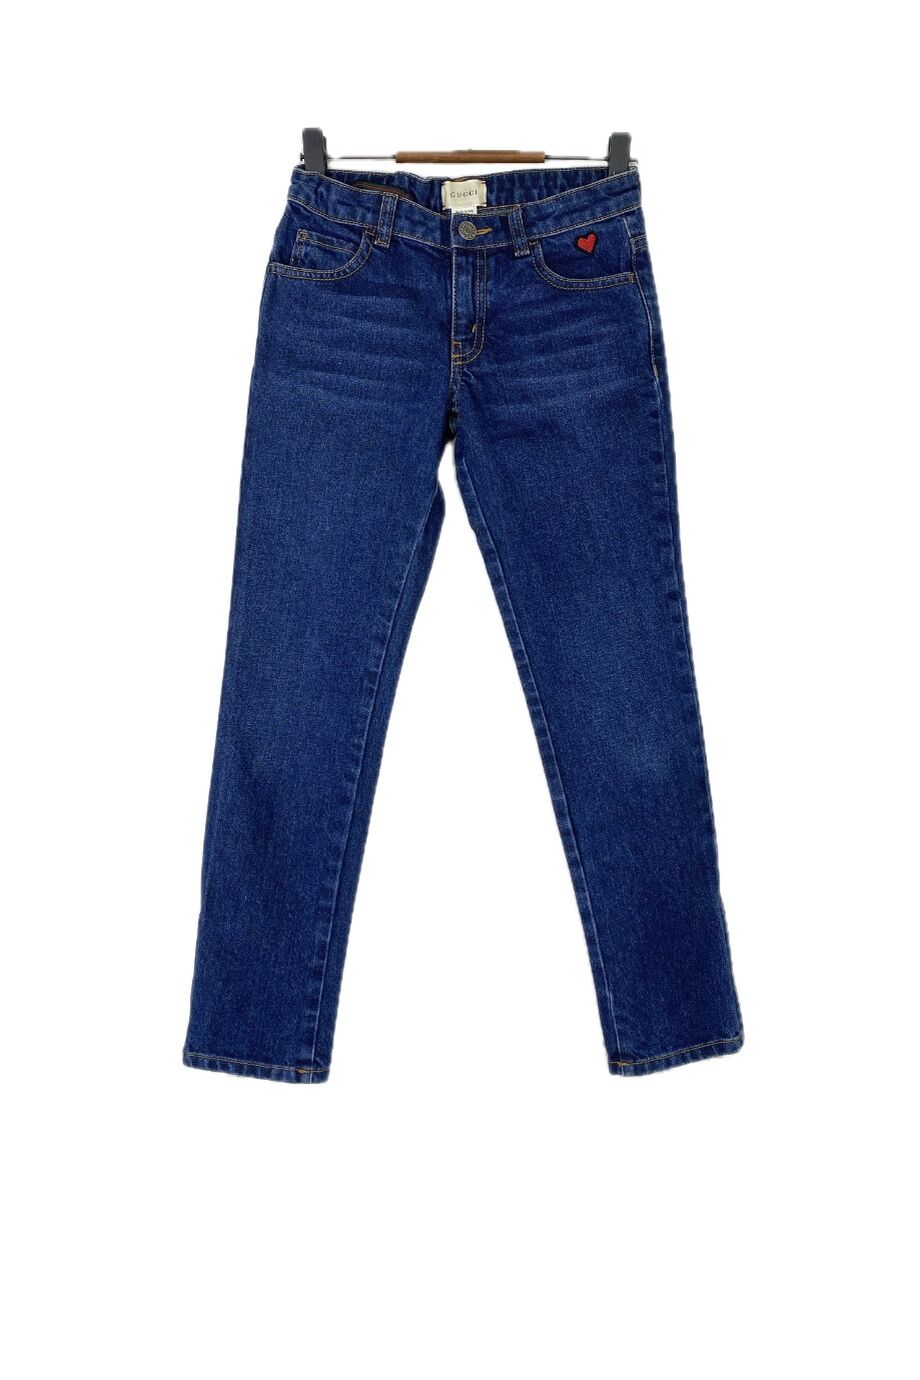 image 1 Детские джинсы синего цвета с сердечком на кармане